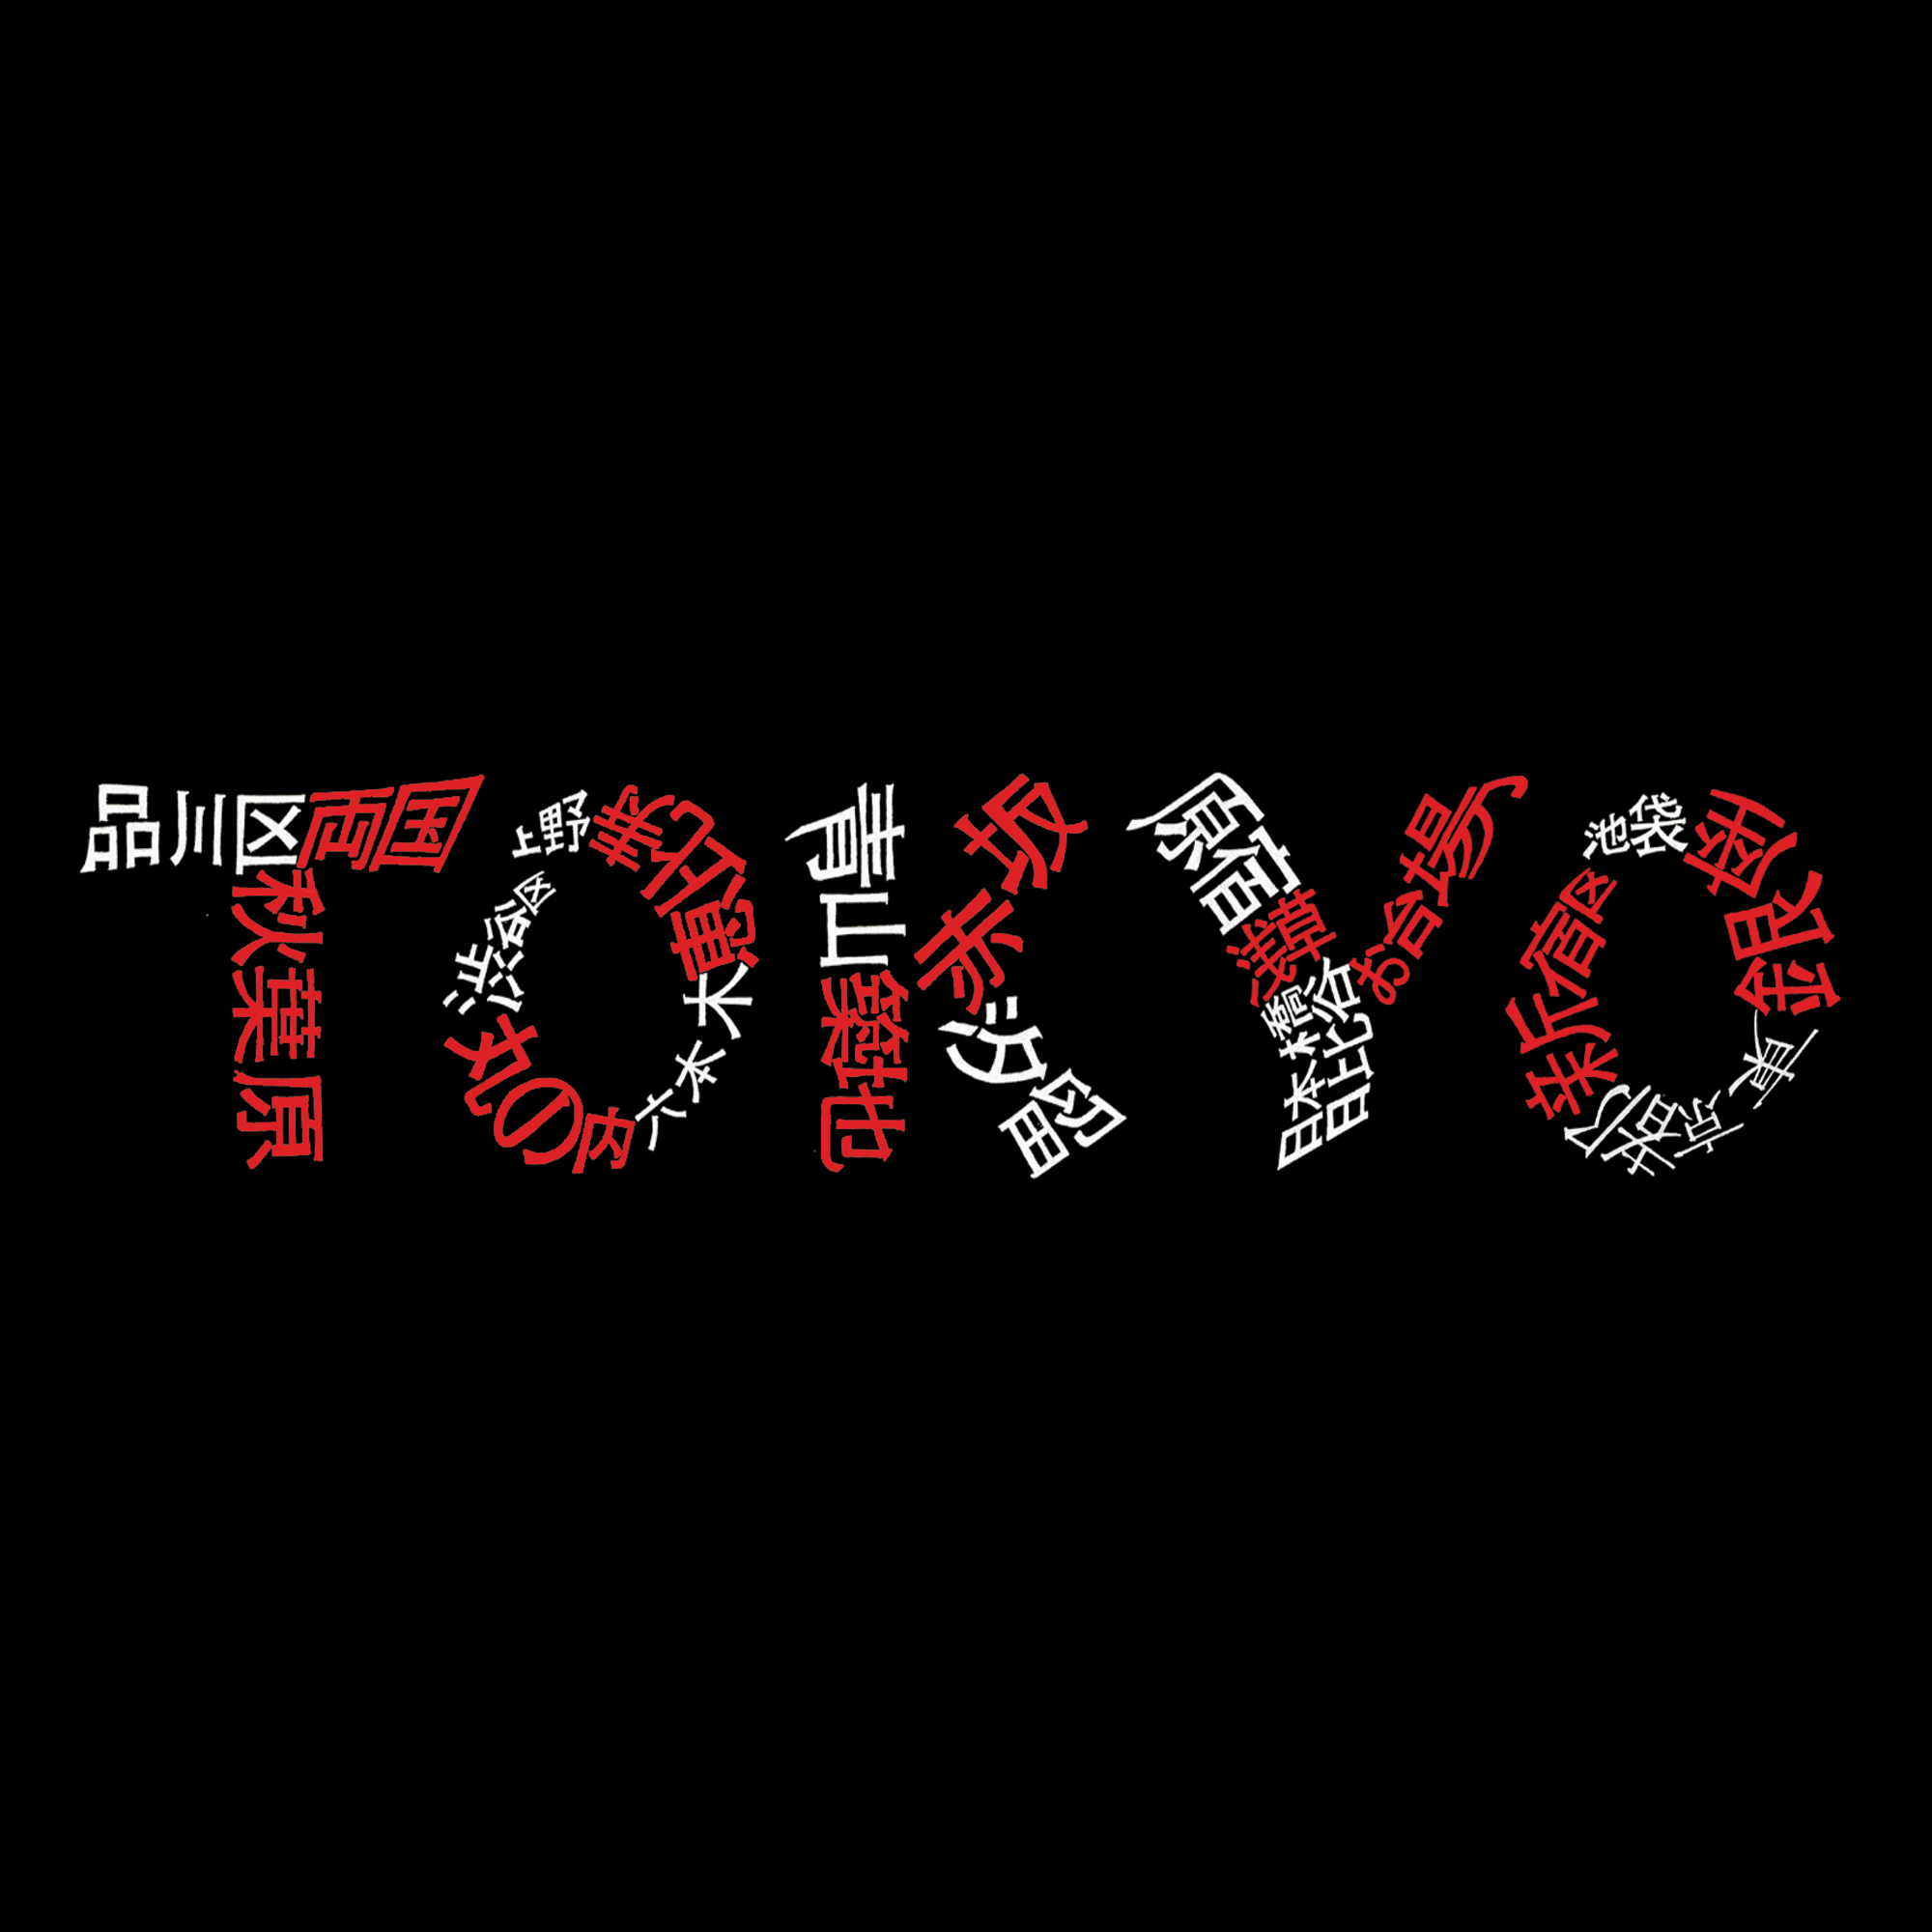 Los Angeles Pop Art Women's Word Art T-shirt - The Neighborhoods of Tokyo - Online Exclusive